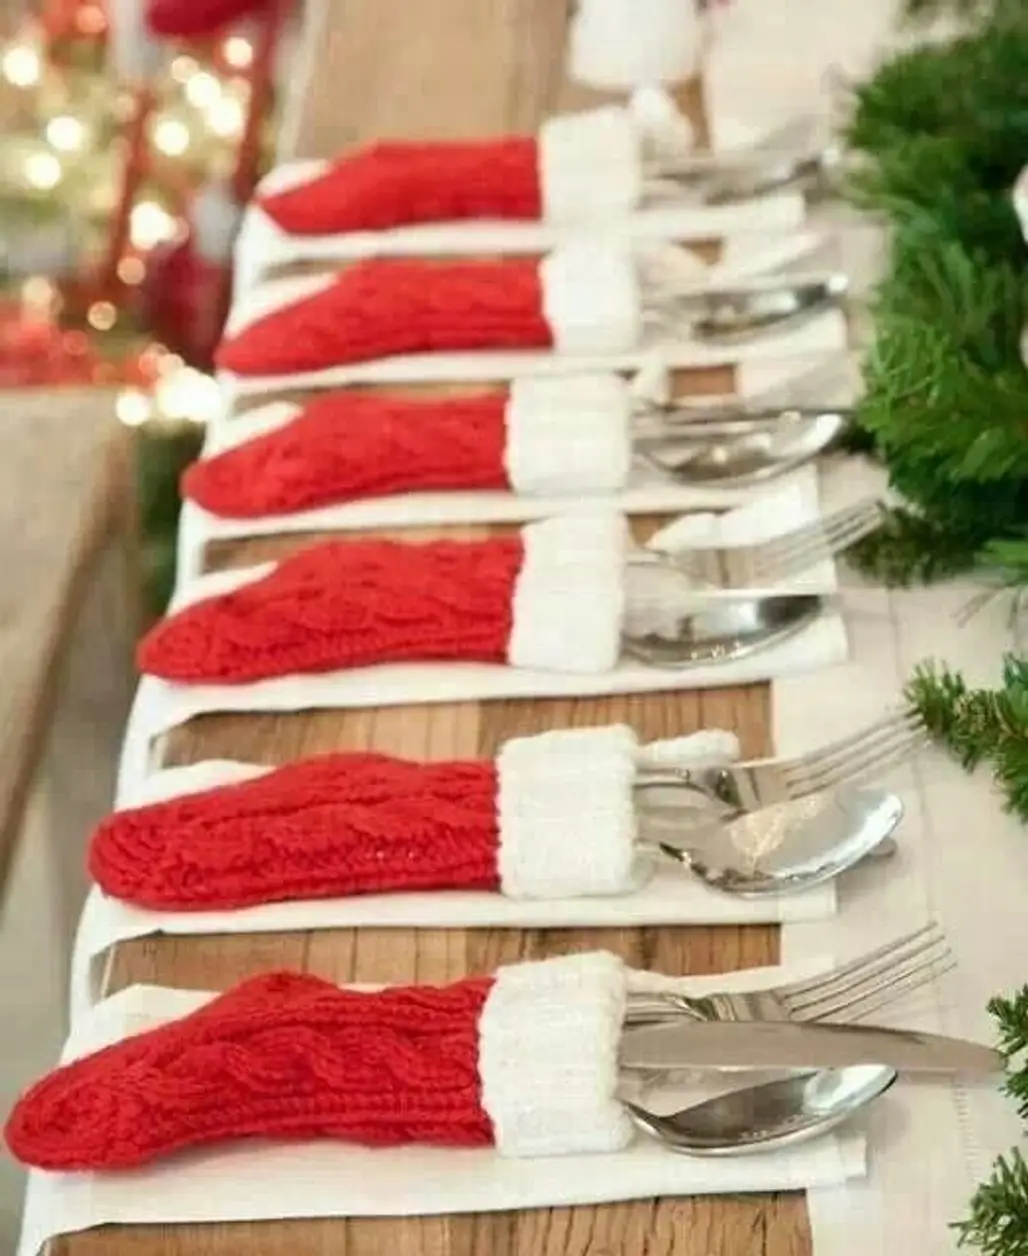 Christmas Table Setting